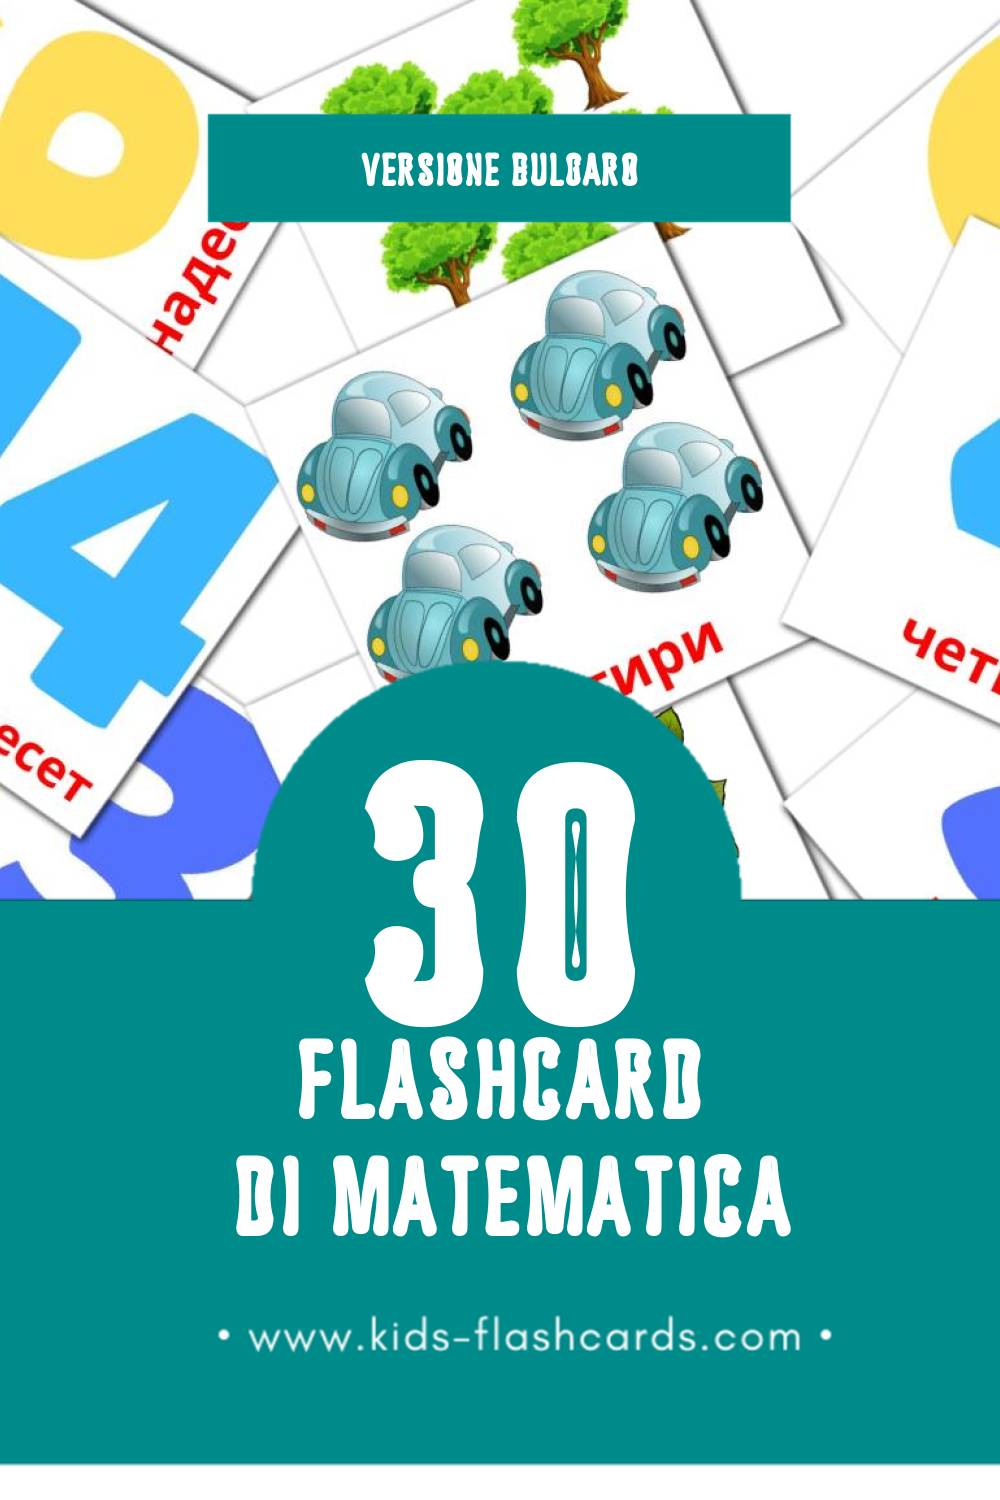 Schede visive sugli Математика per bambini (30 schede in Bulgaro)